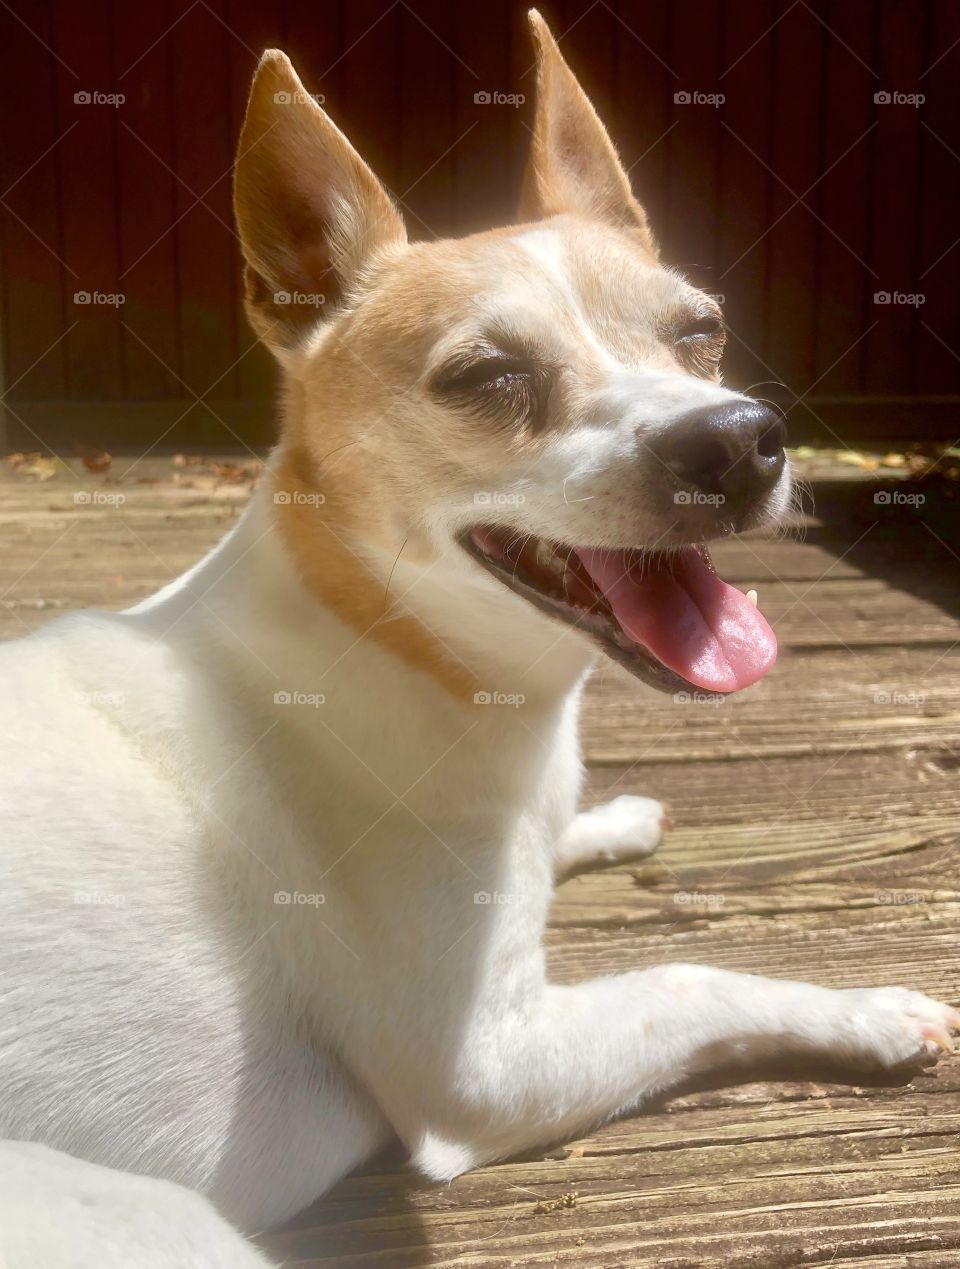 Sweet little senior dog smiling in the sunshine 